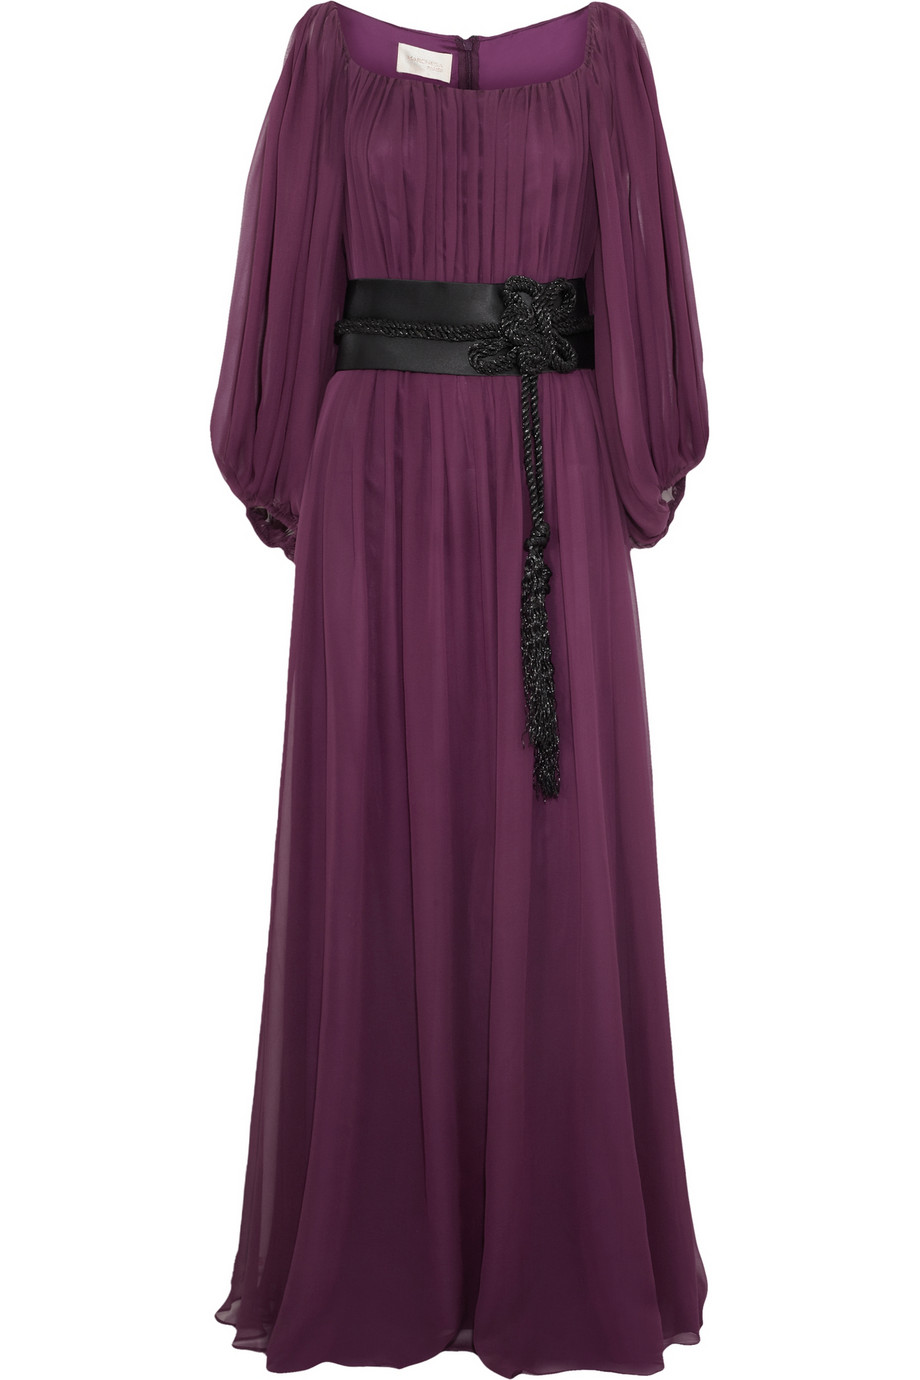 Marchesa notte Contrast Beltdetail Silkchiffon Gown in Plum (Purple) - Lyst